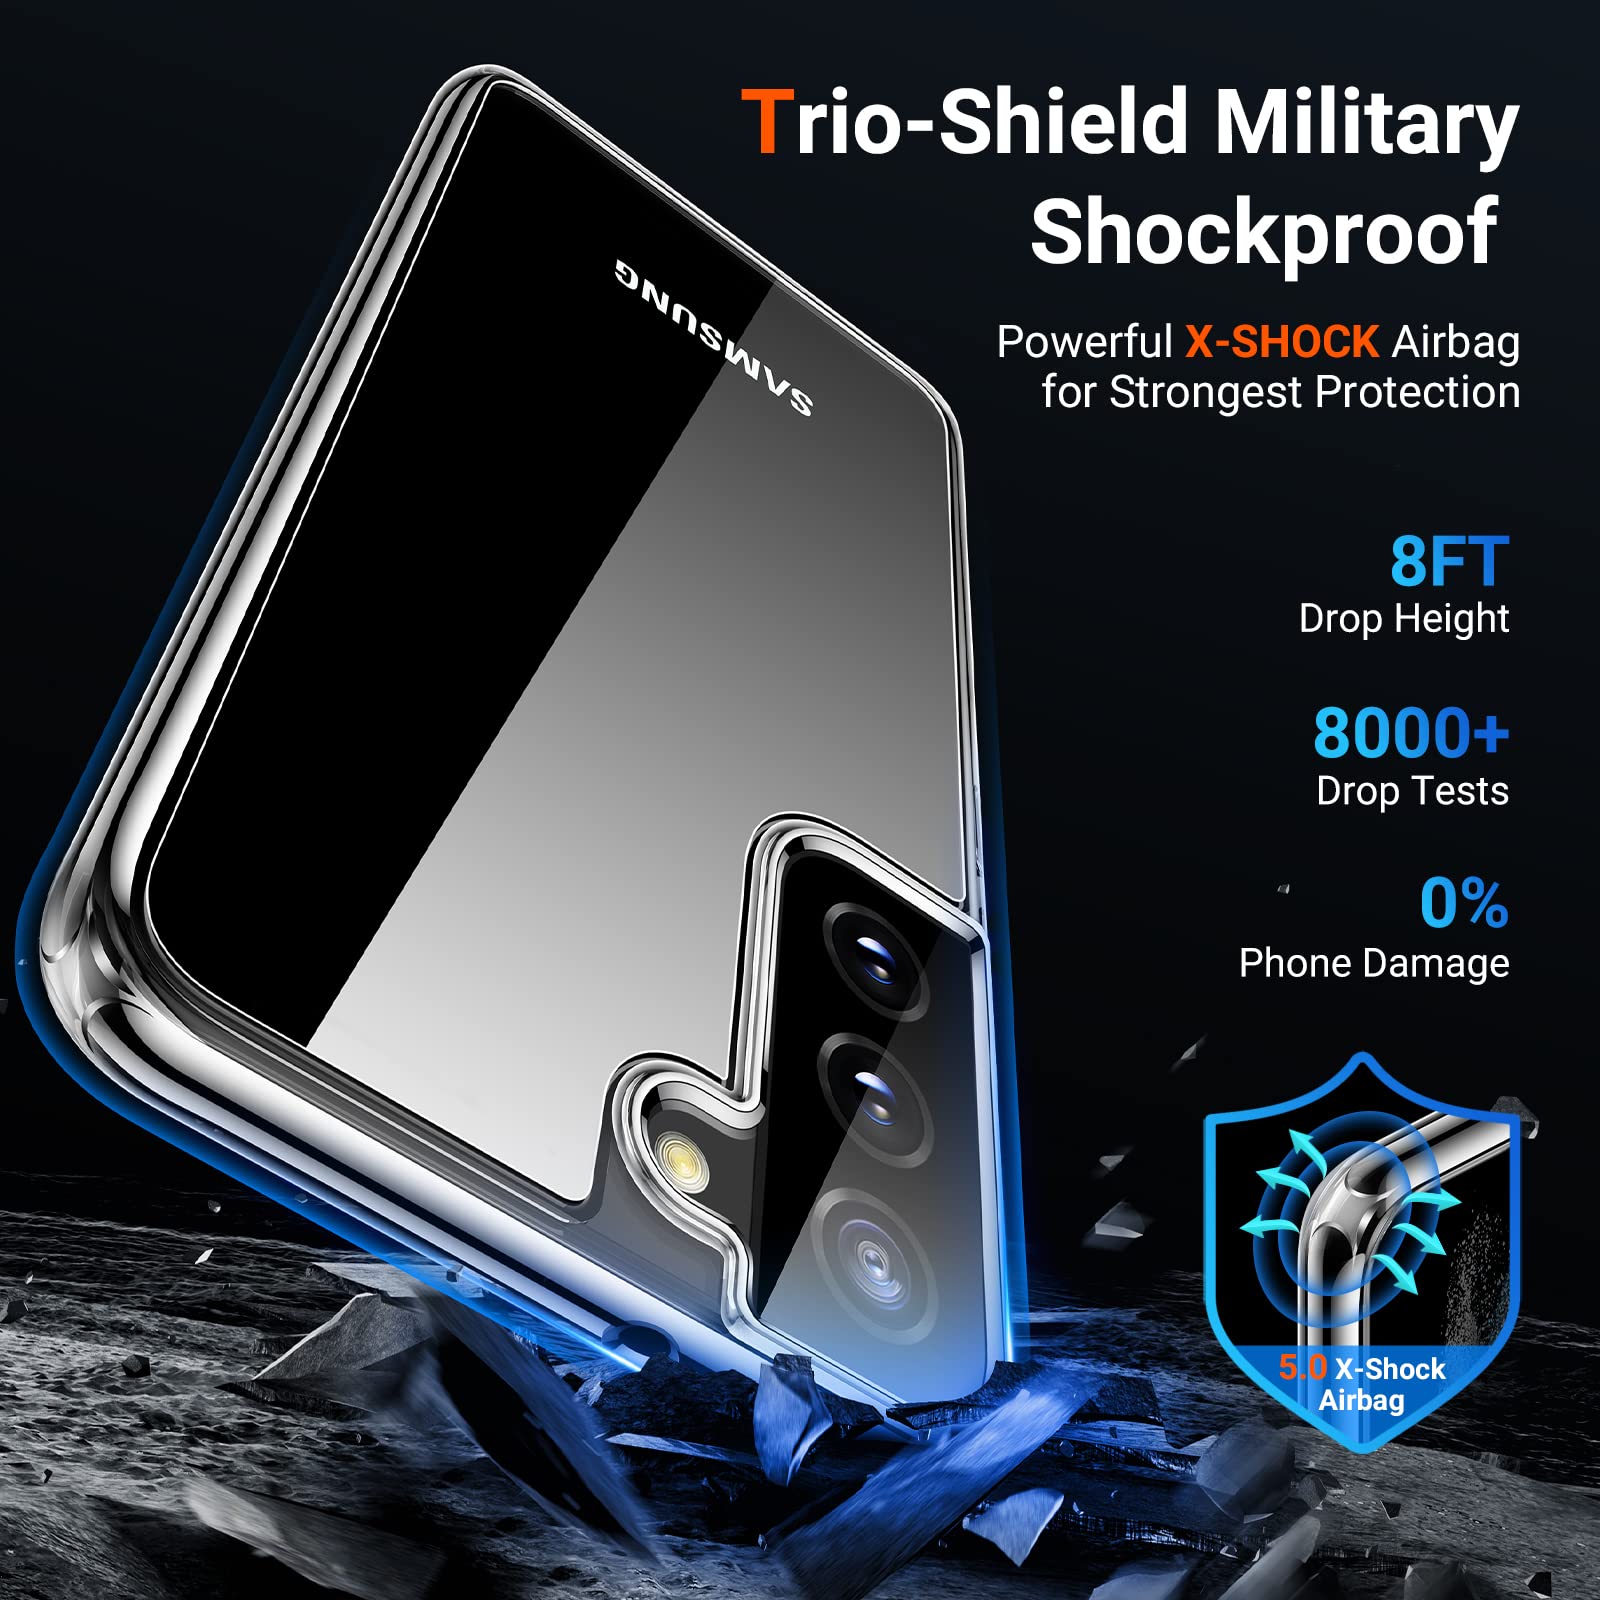 Ốp lưng silicon dẻo siêu mỏng 0.6mm cho Samsung Galaxy S22 Plus hiệu Ultra Thin độ trong tuyệt đối - Hàng nhập khẩu